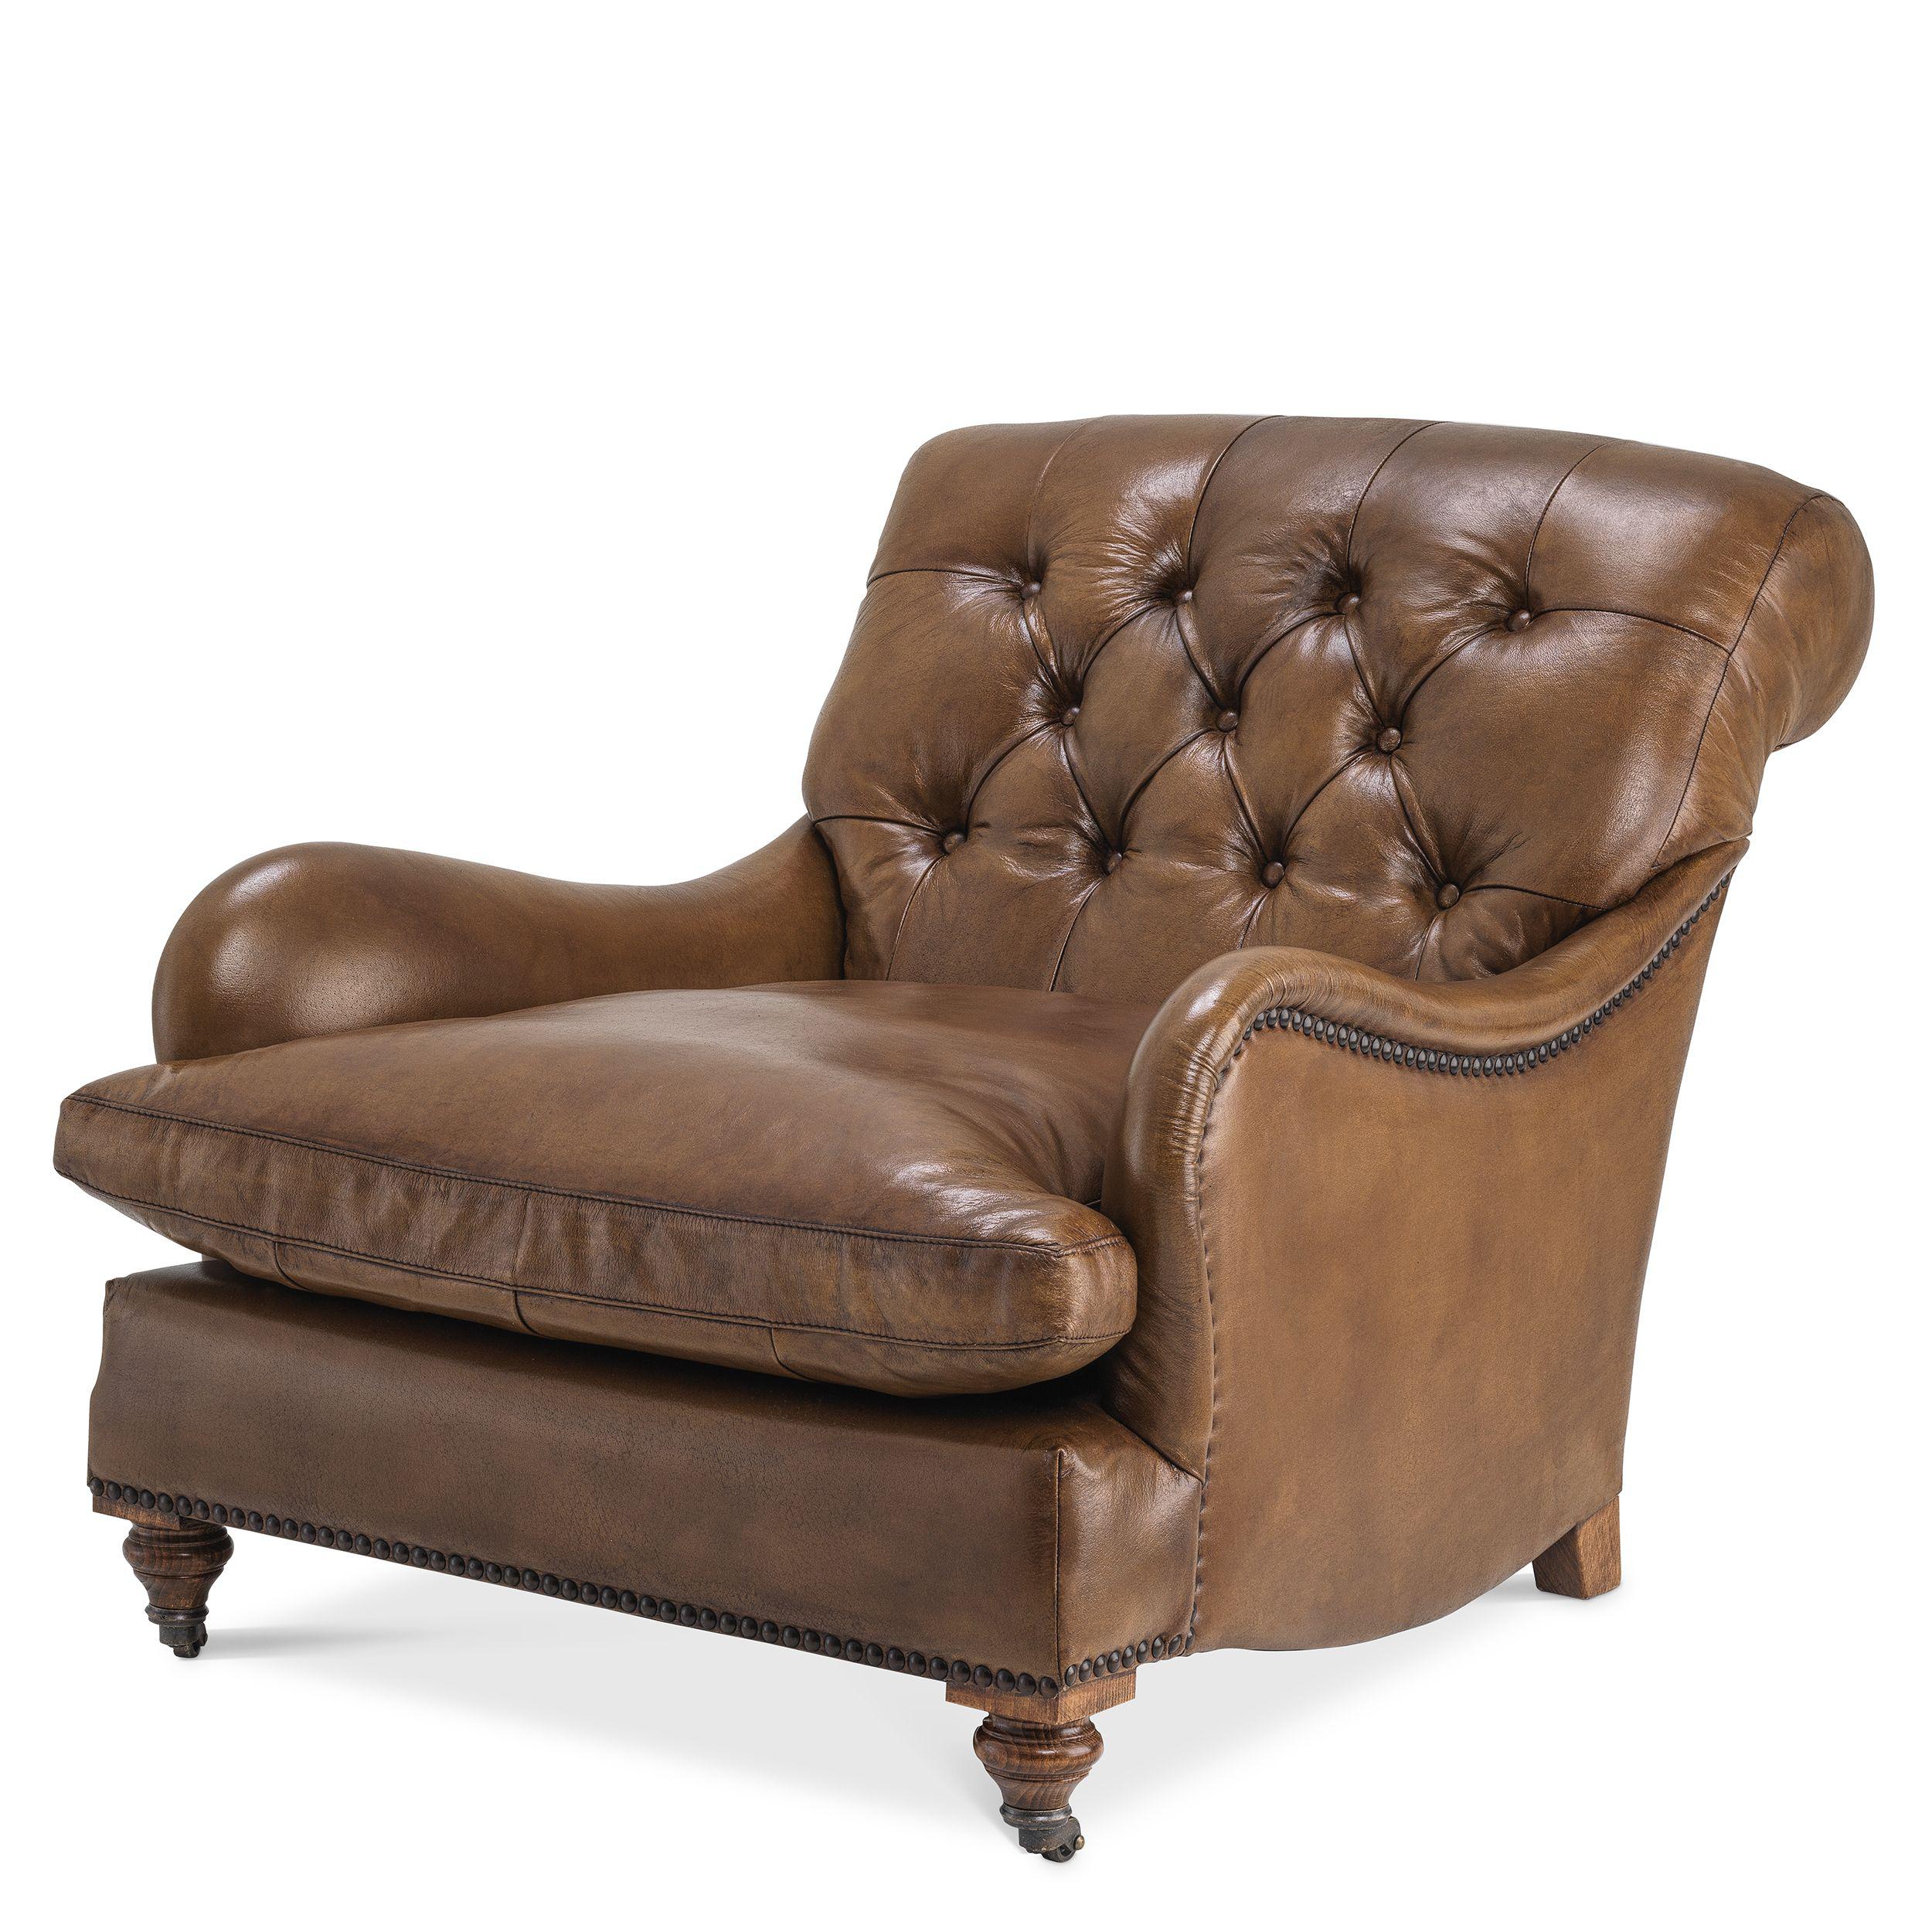 Купить Кресло Club Chair Caledonian в интернет-магазине roooms.ru